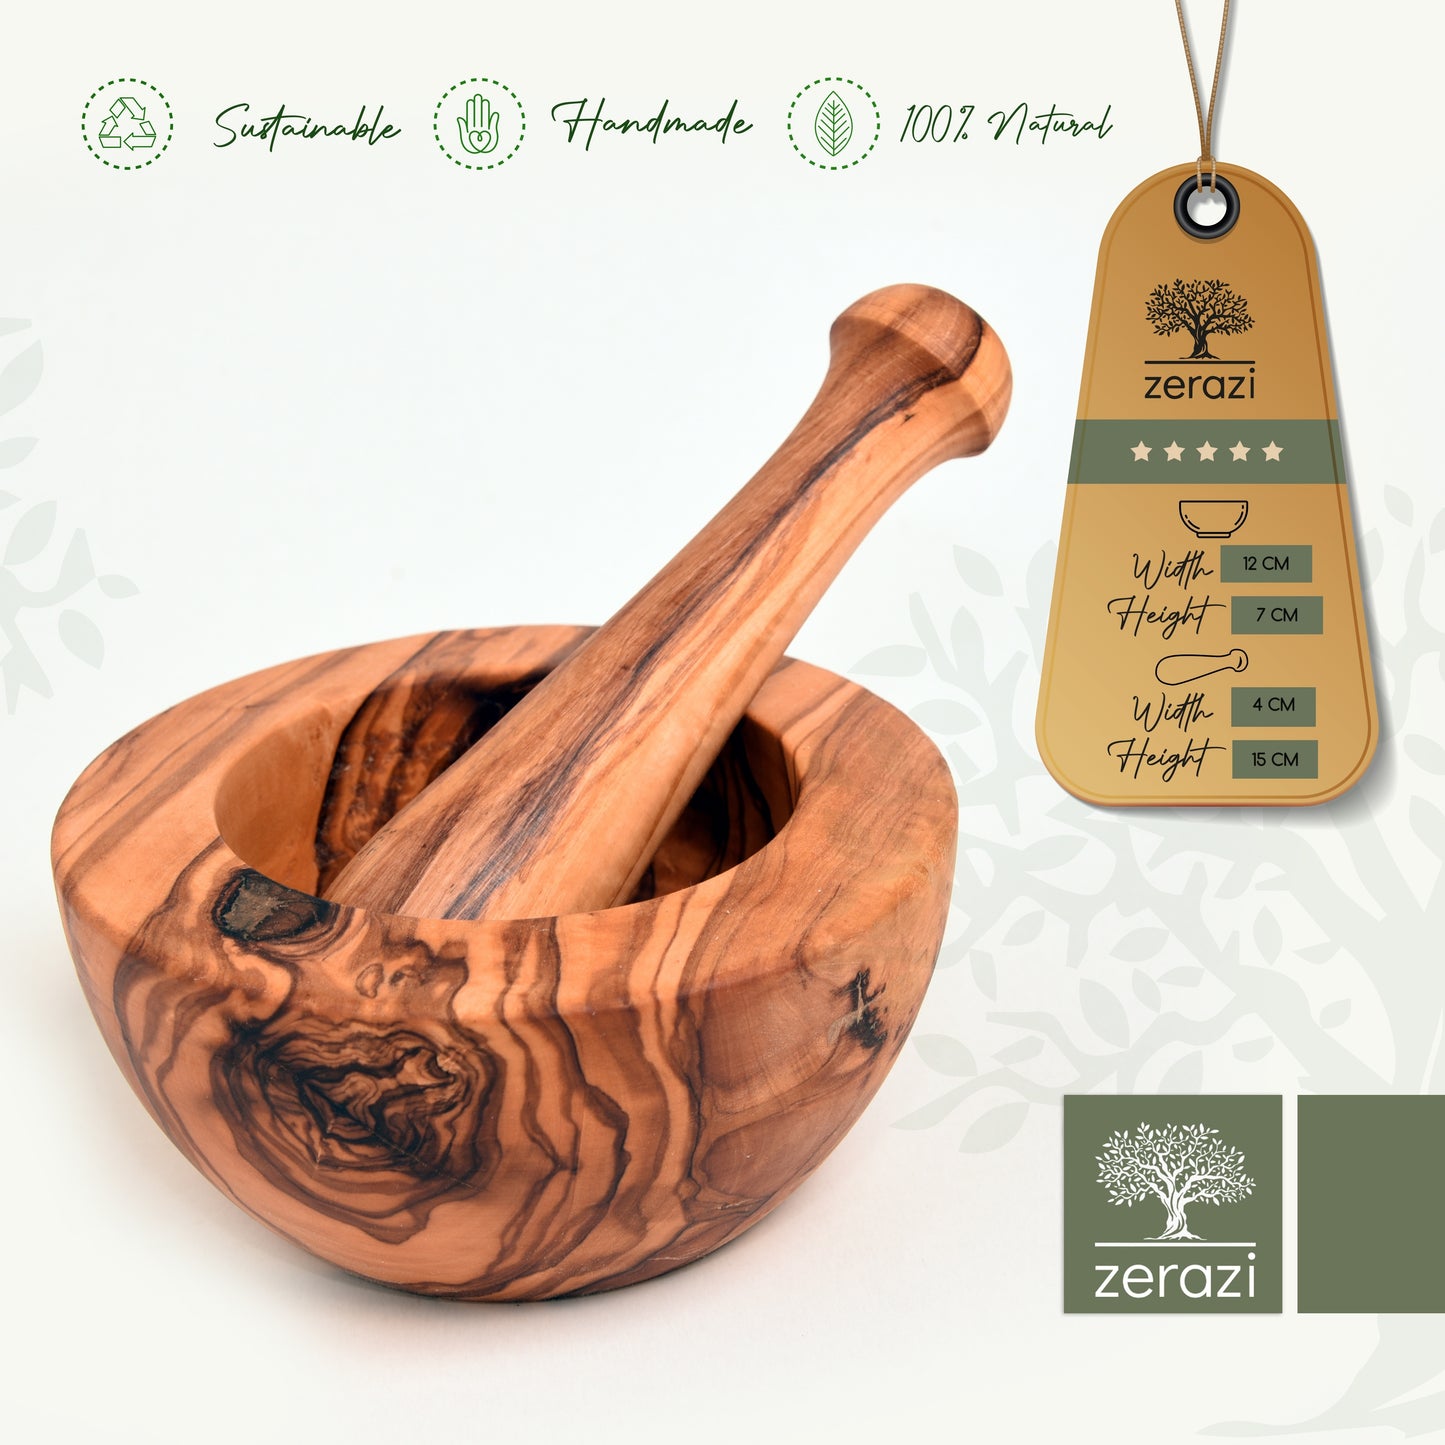 Zerazi | vijzel & stamper | olijfhout | 16cm | ecologisch | volledig handgemaakt | duurzaam | hygiënisch